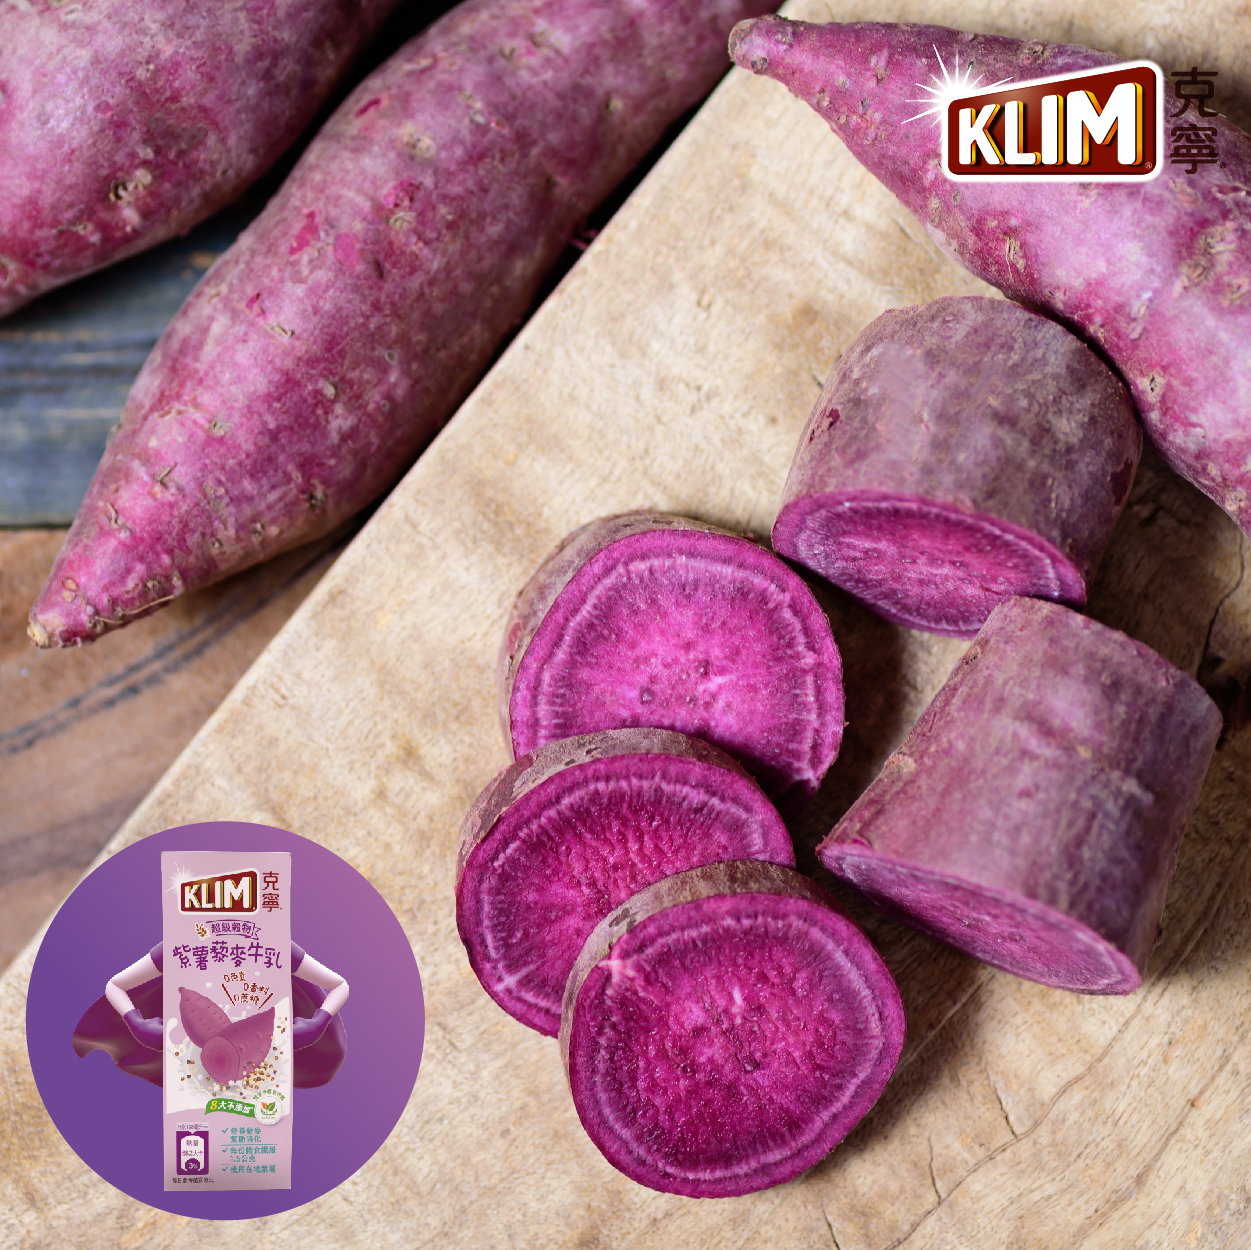 克寧 紫薯藜麥牛乳 在地紫薯與超級穀物三色藜麥尬出新口味